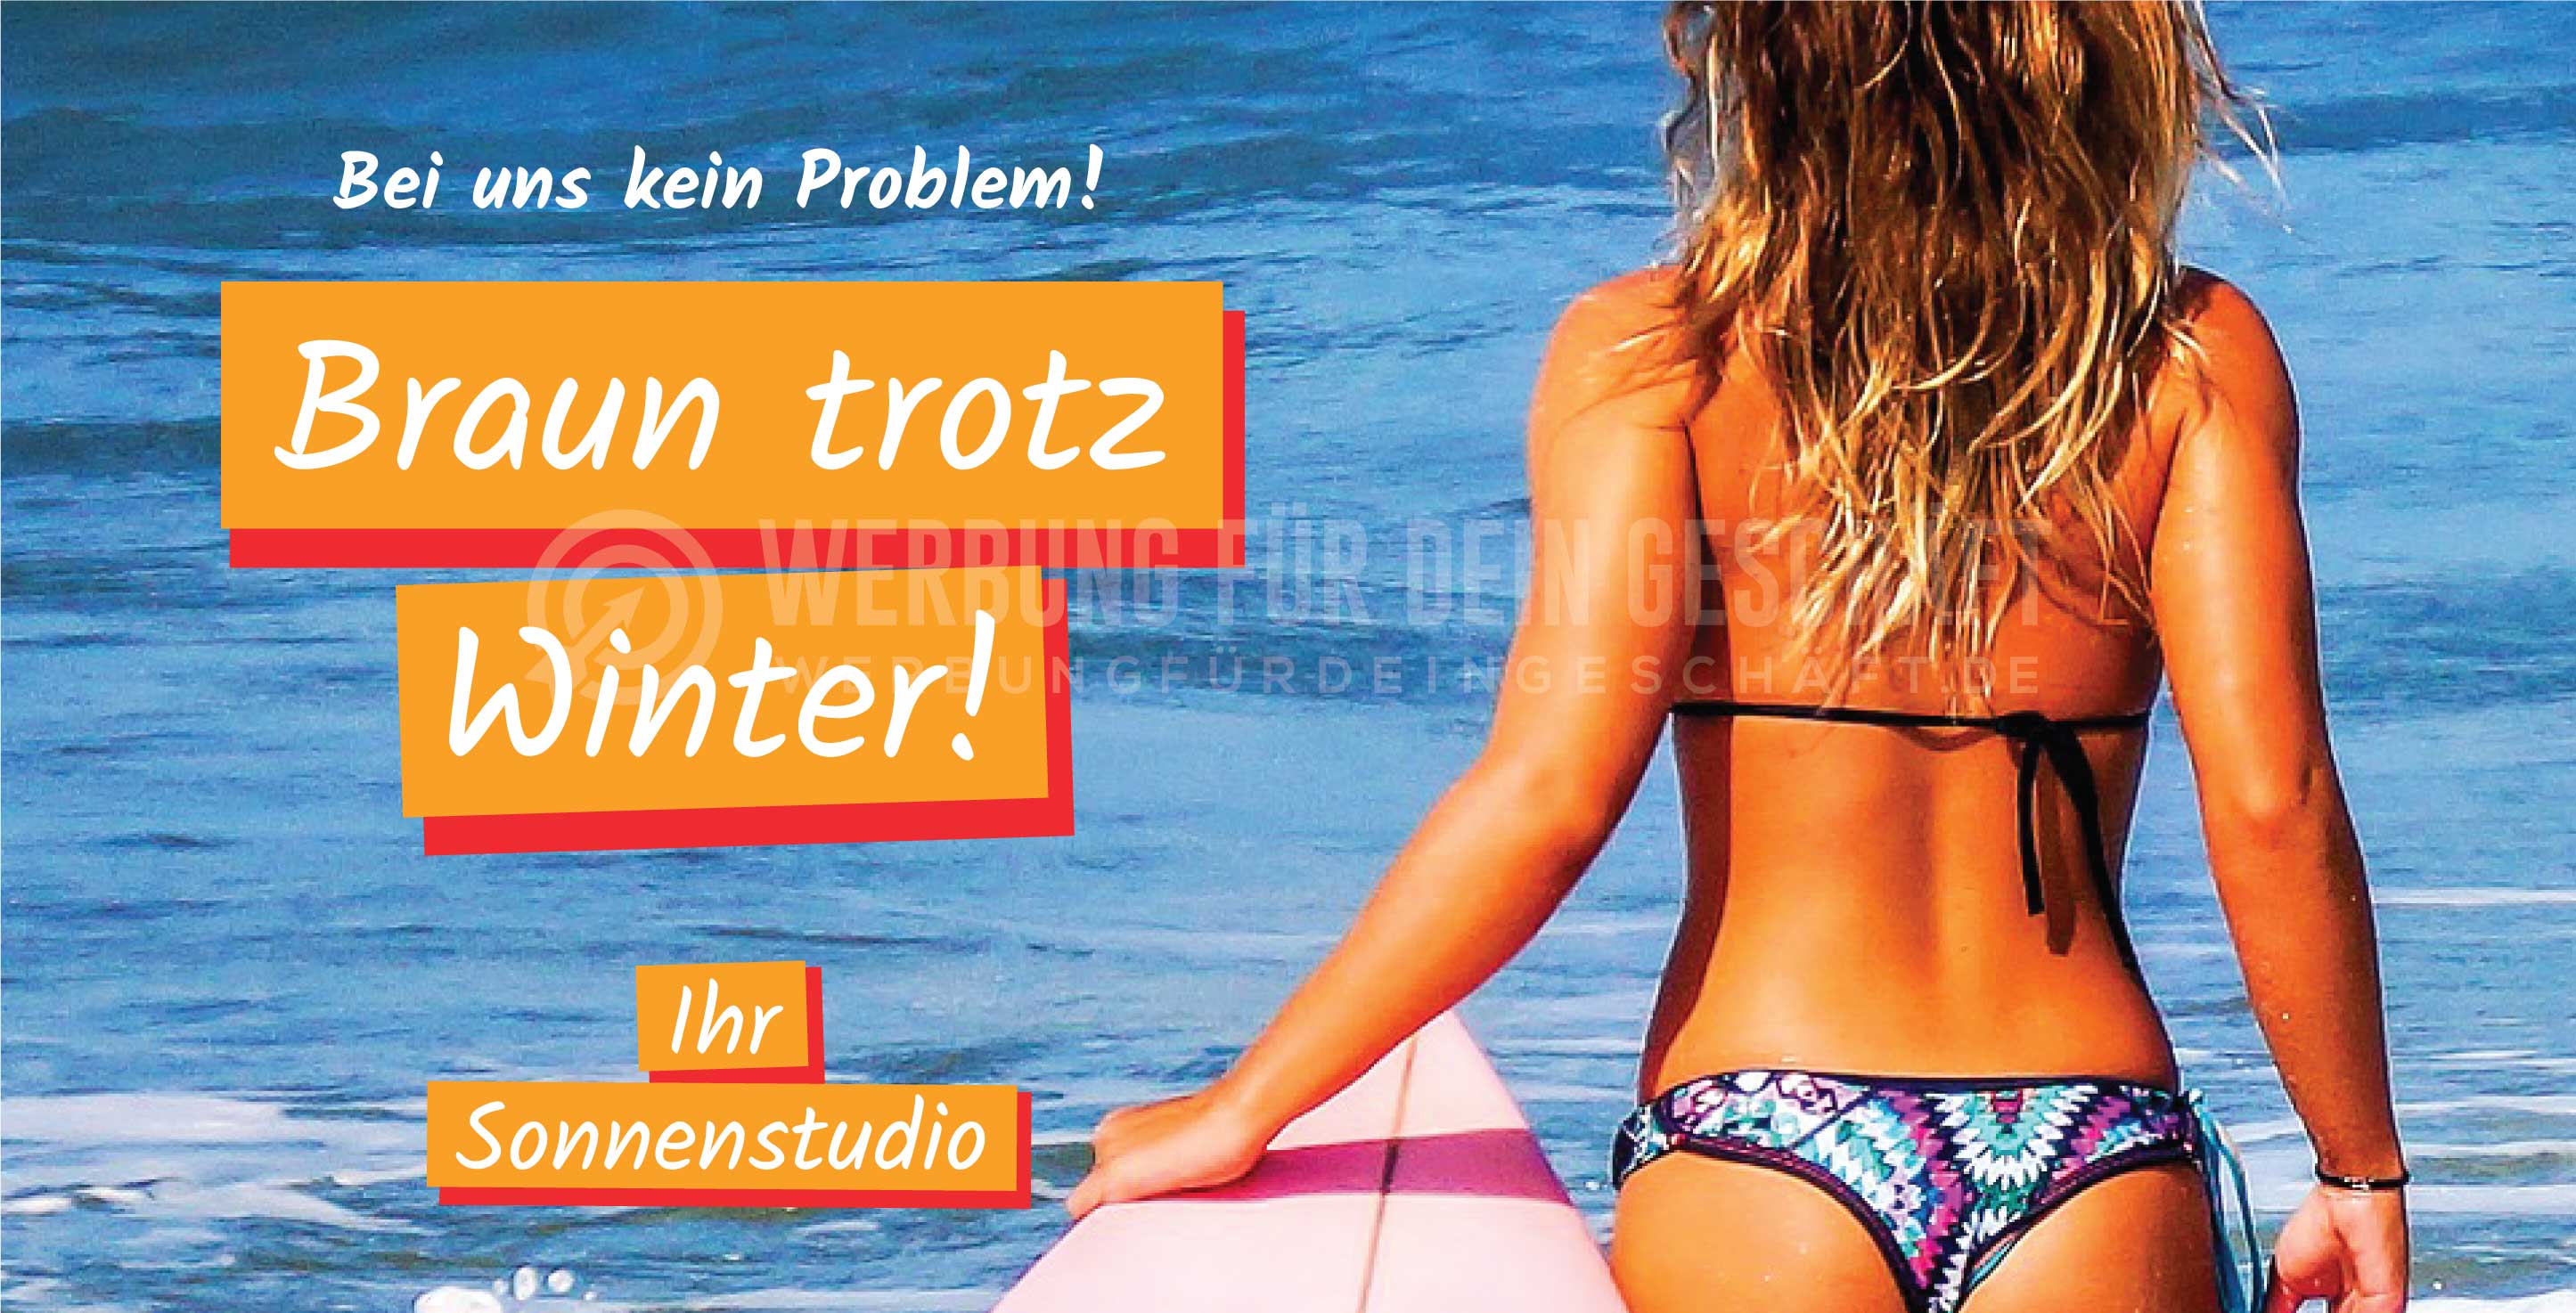 2:1 | Braun trotz Winter Plakat | Werbebanner für Ihr Sonnenstudio | 2 zu 1 Format